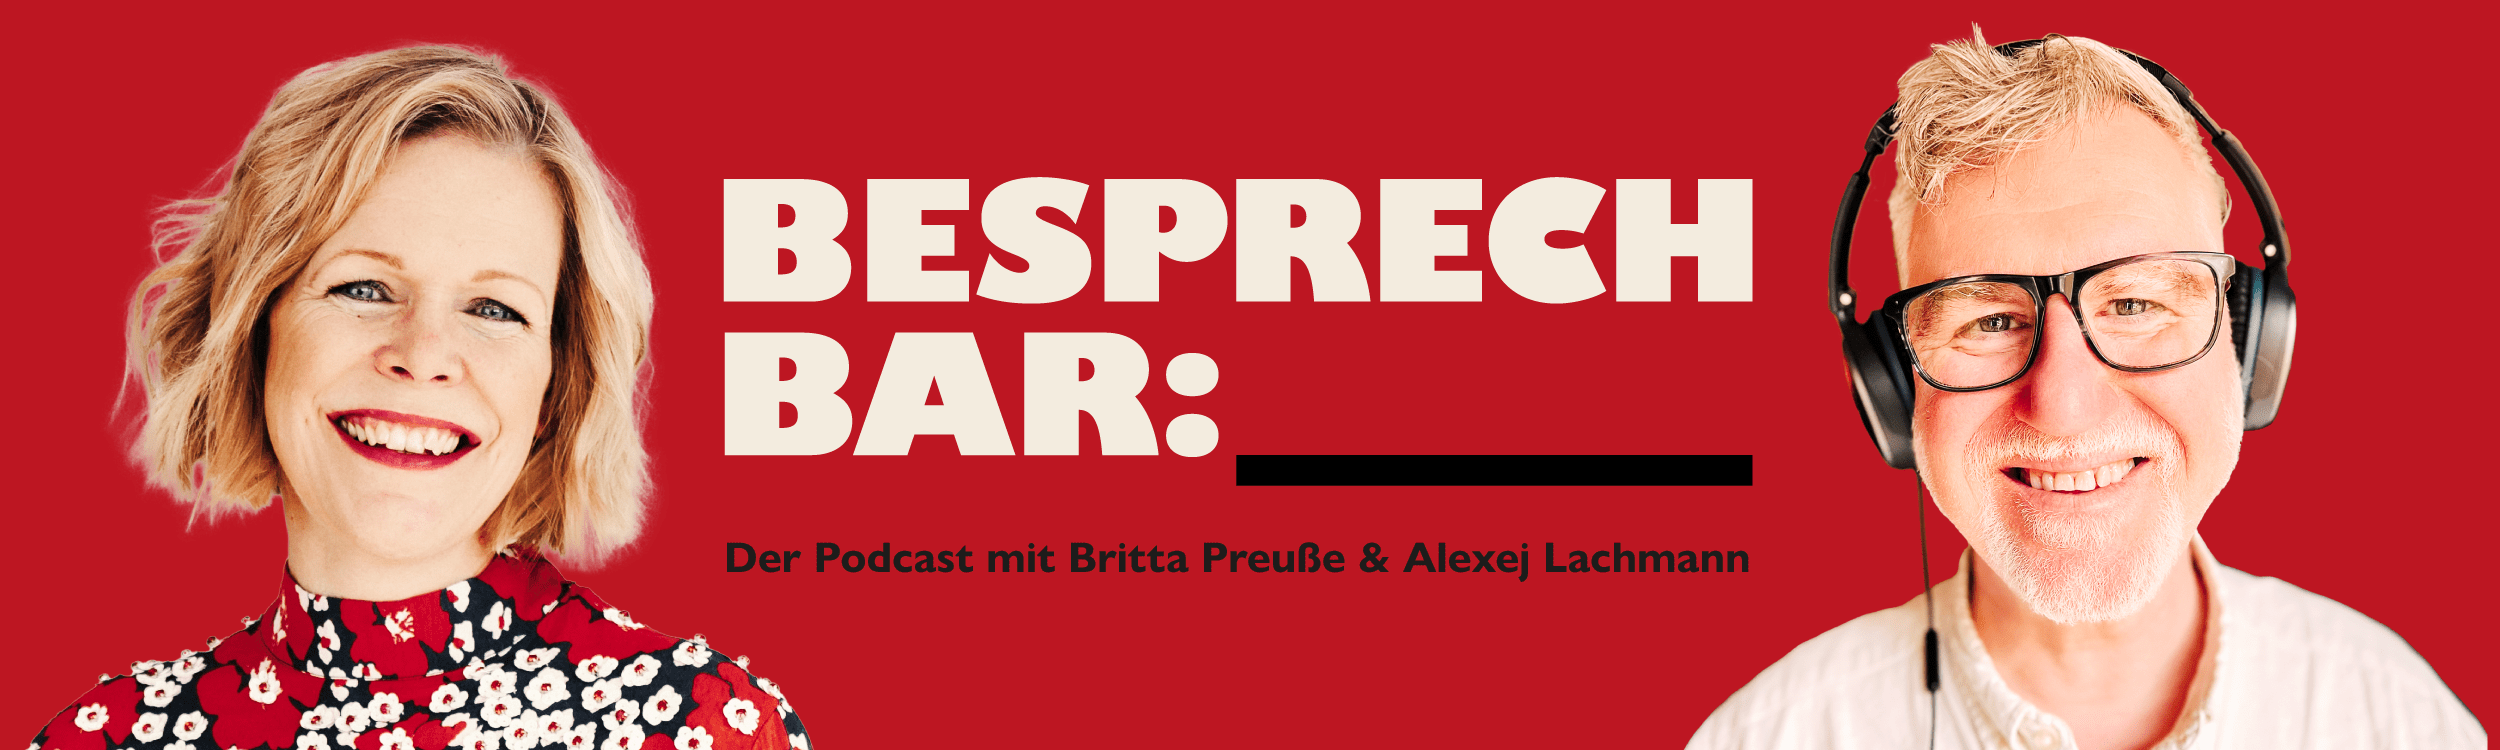 Besprechbar Podcast zu den Themen Verlust und Trauer mit Britta Preuße und Alexej Lachmann Hamburg